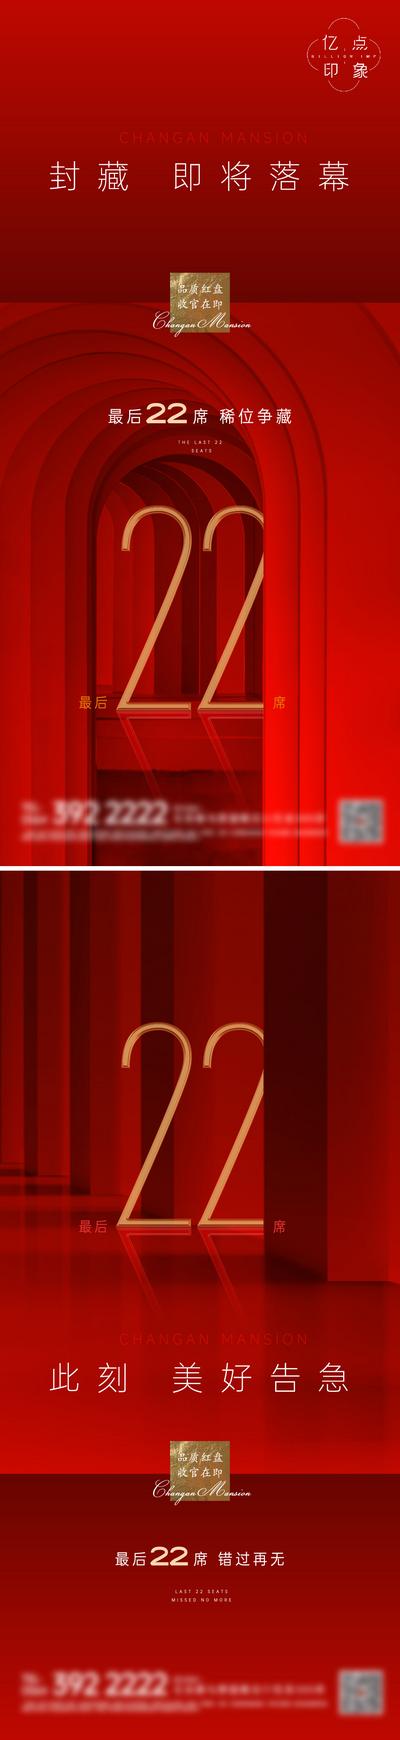 南门网 海报 房地产 收官 加推 清盘 落幕 热销 数字 红色 空间感 质感 系列